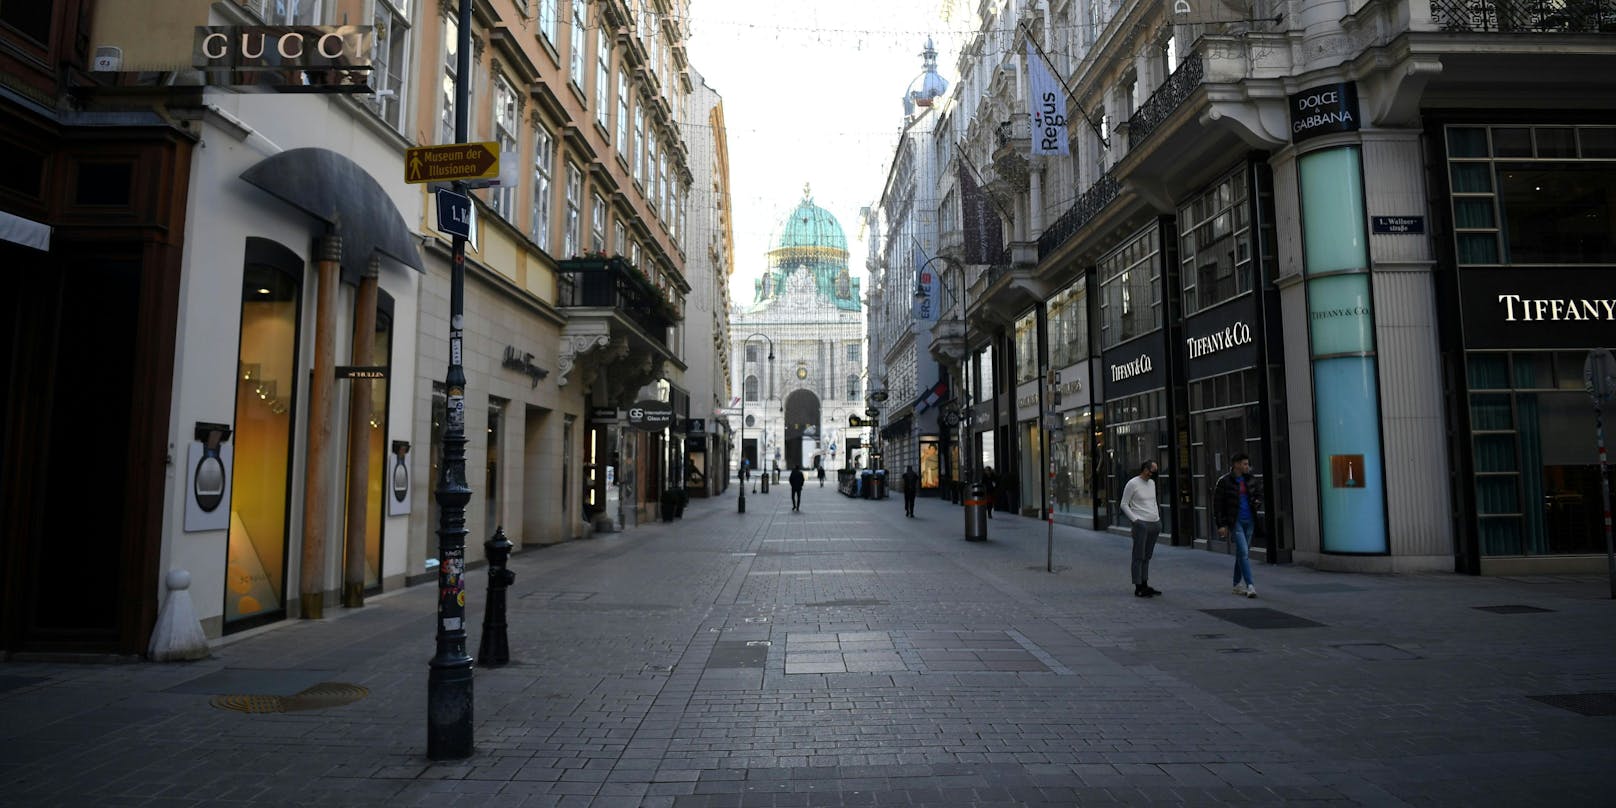 Die Situation am Kohlmarkt in der Wiener Innenstadt während des 2. Lockdowns aufgenommen am Dienstag, 17. November 2020.